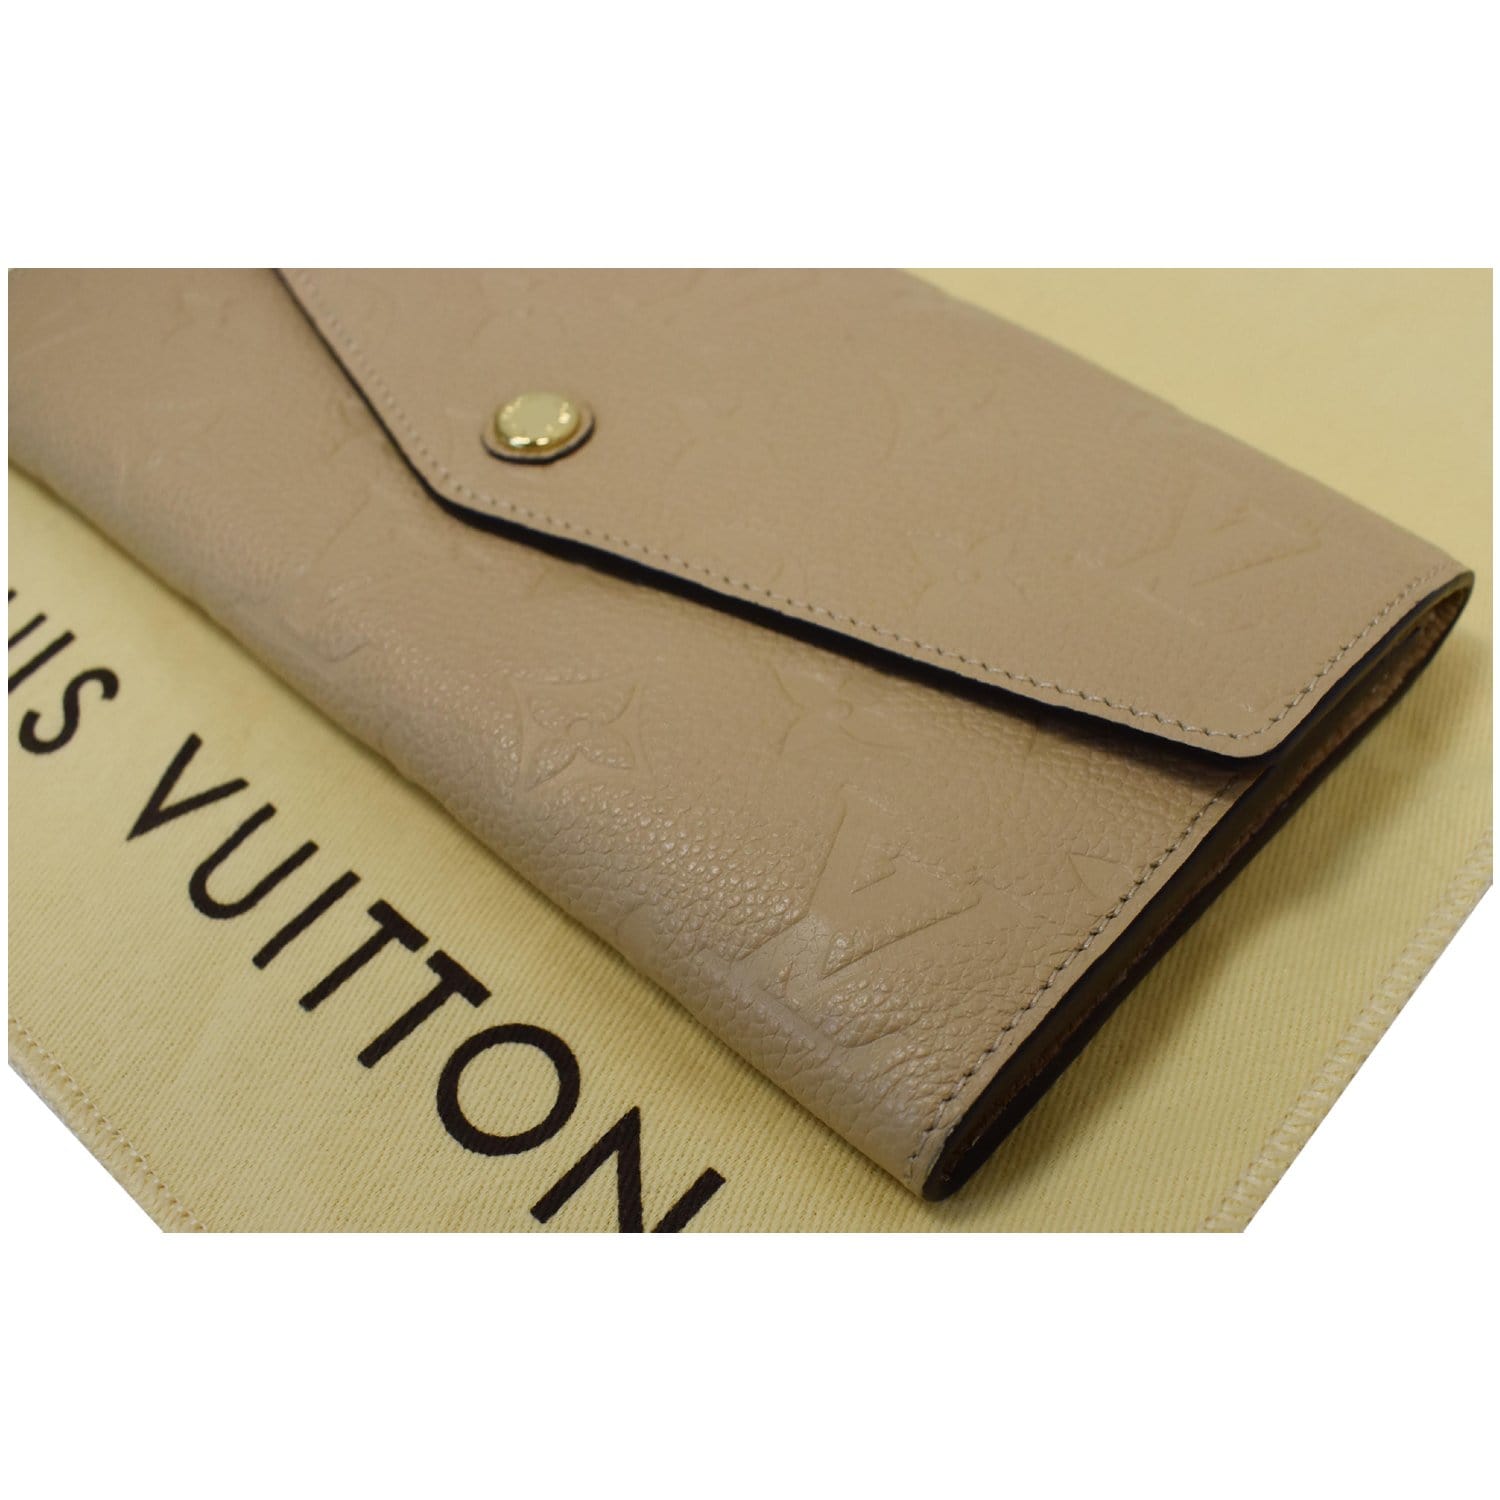 Louis Vuitton Empreinte Curieuse Wallet Dune Beige - MyDesignerly